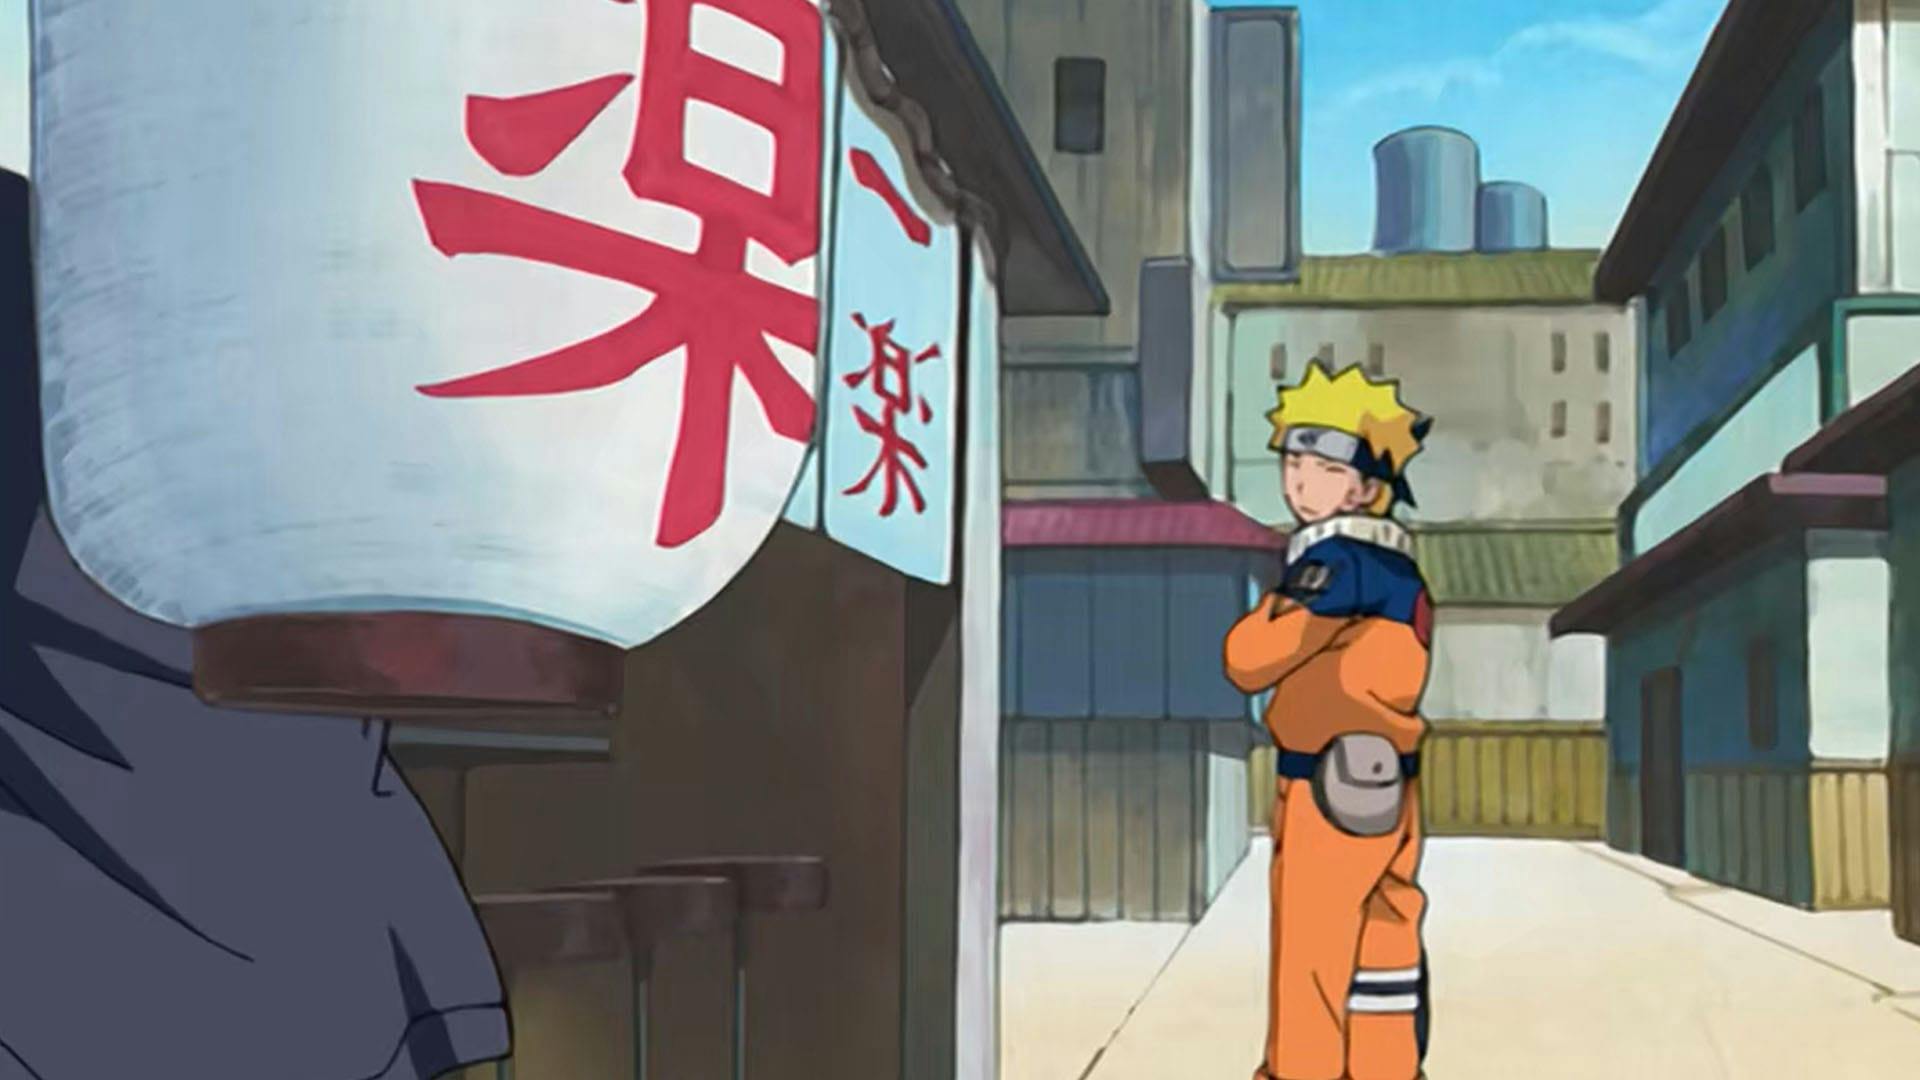 Naruto background image